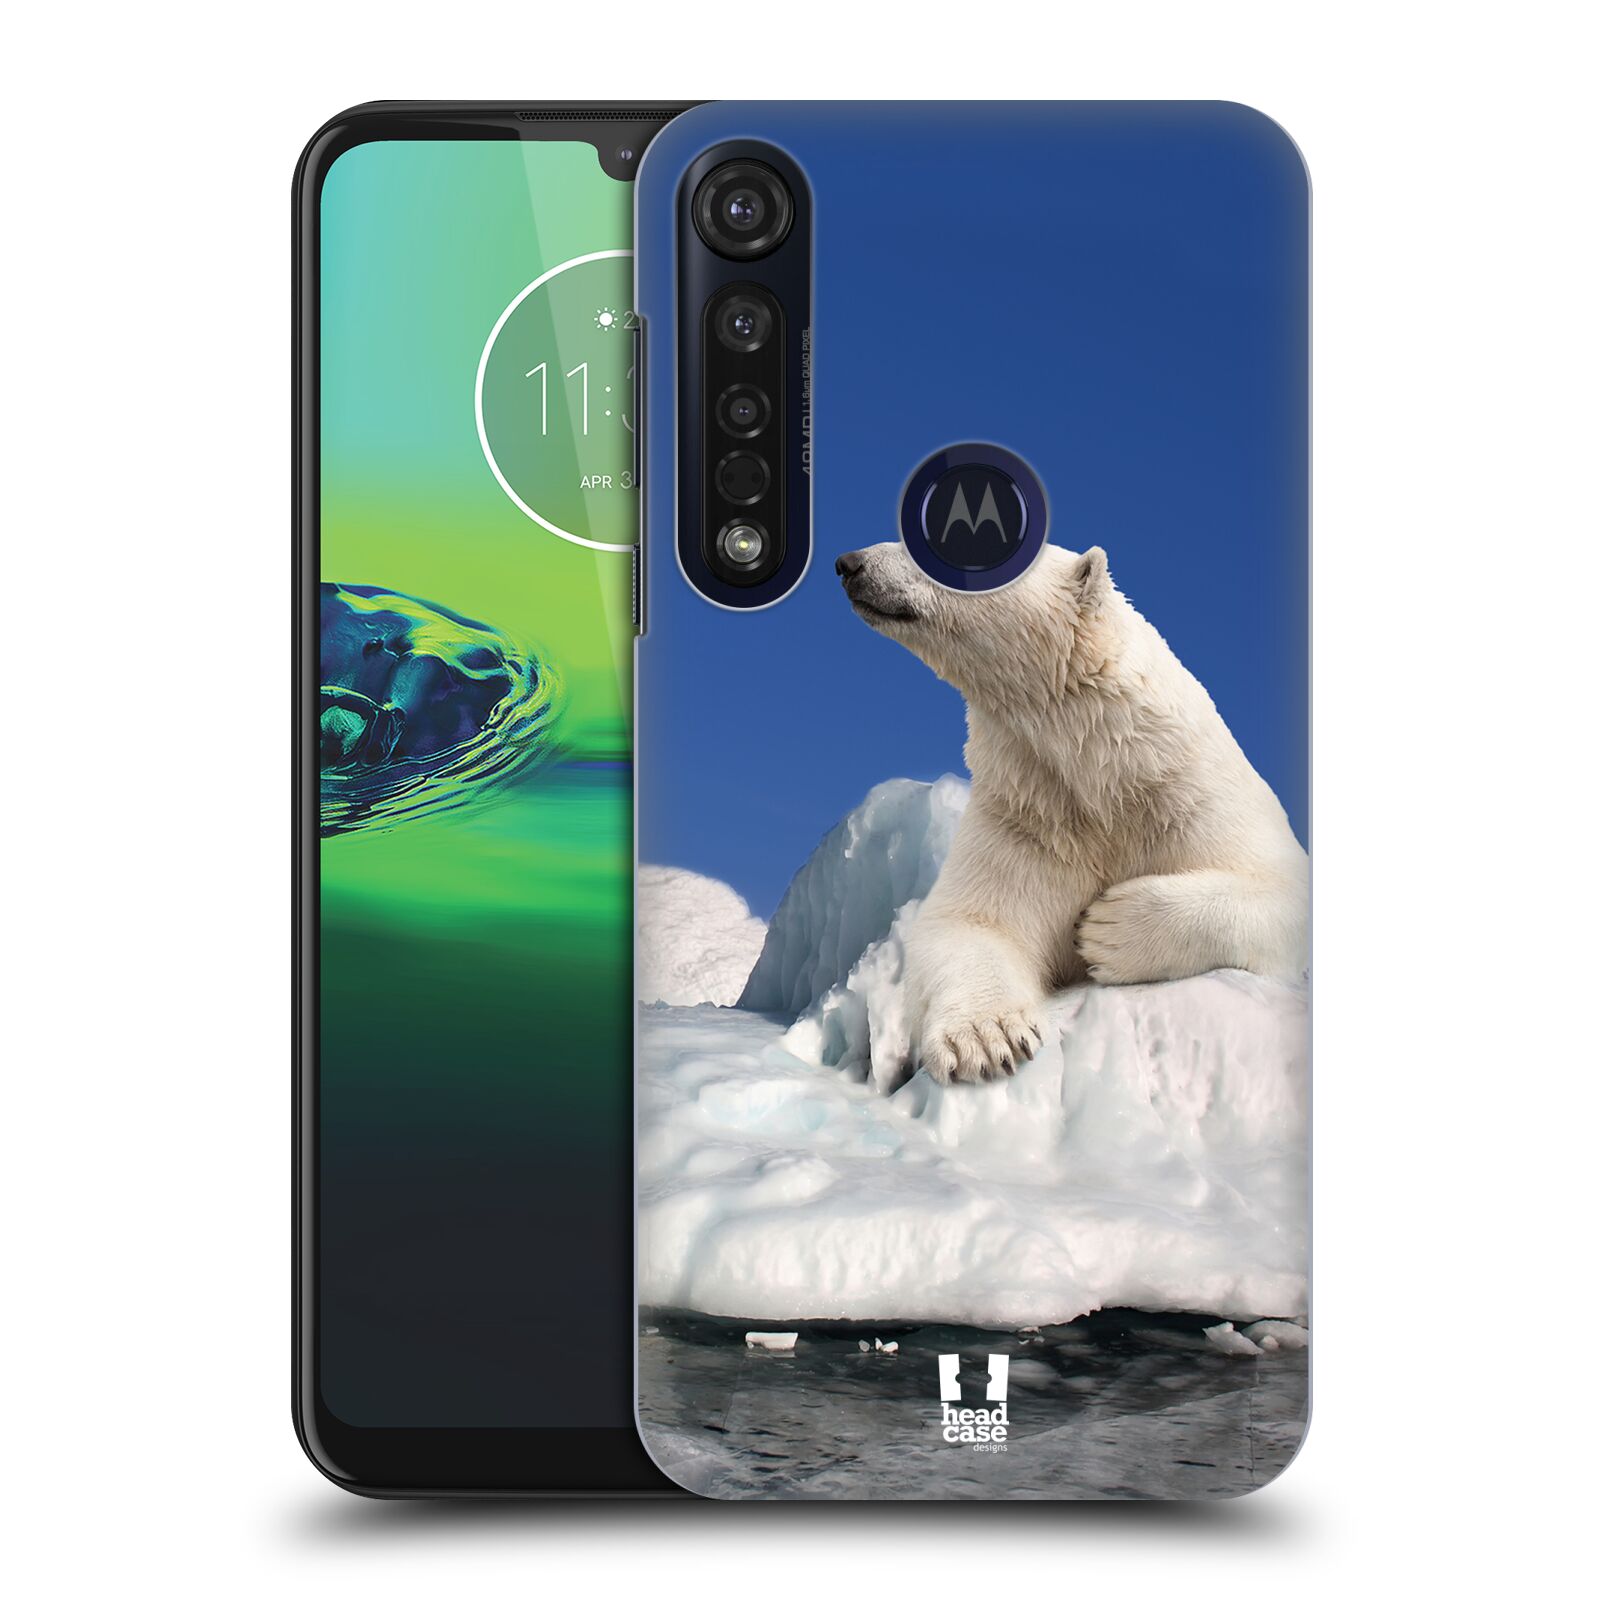 Pouzdro na mobil Motorola Moto G8 PLUS - HEAD CASE - vzor Divočina, Divoký život a zvířata foto LEDNÍ MEDVĚD NA LEDOVCI A NEBE MODRÁ